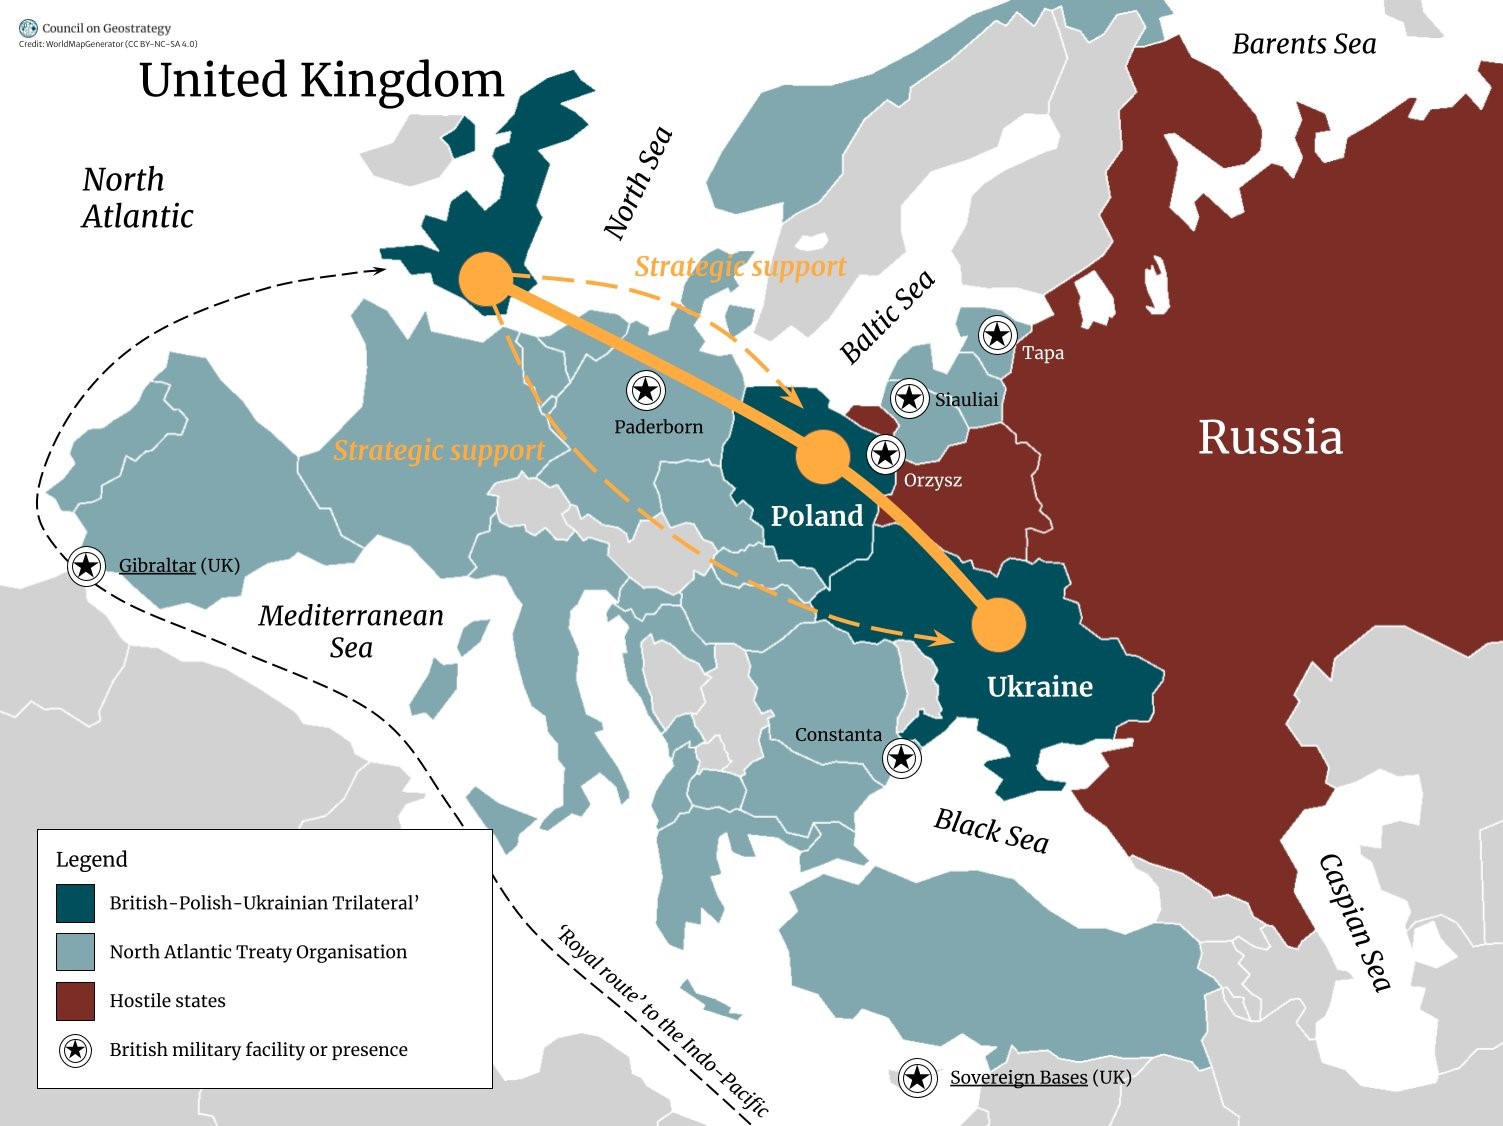 Трасс: Британия будет разивать новые трехсторонние связи с Польшей и Украиной – карта оси